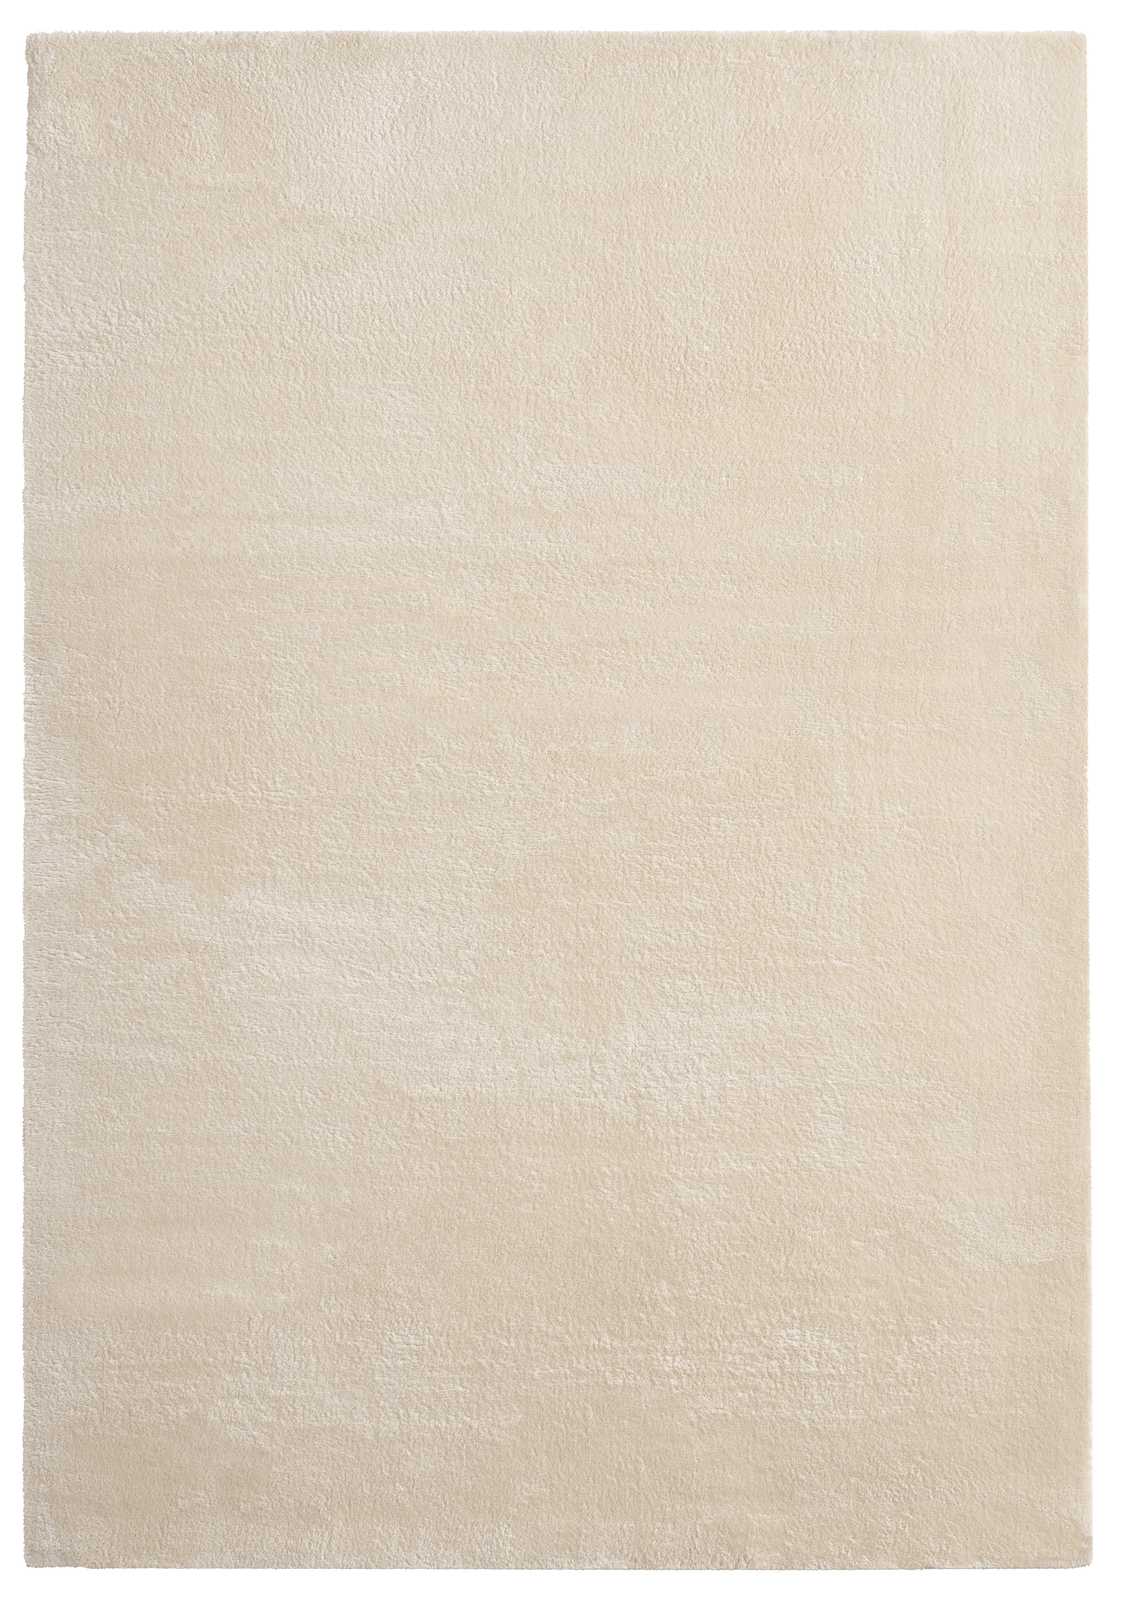             Tapis moelleux à poils longs beige - 110 x 60 cm
        